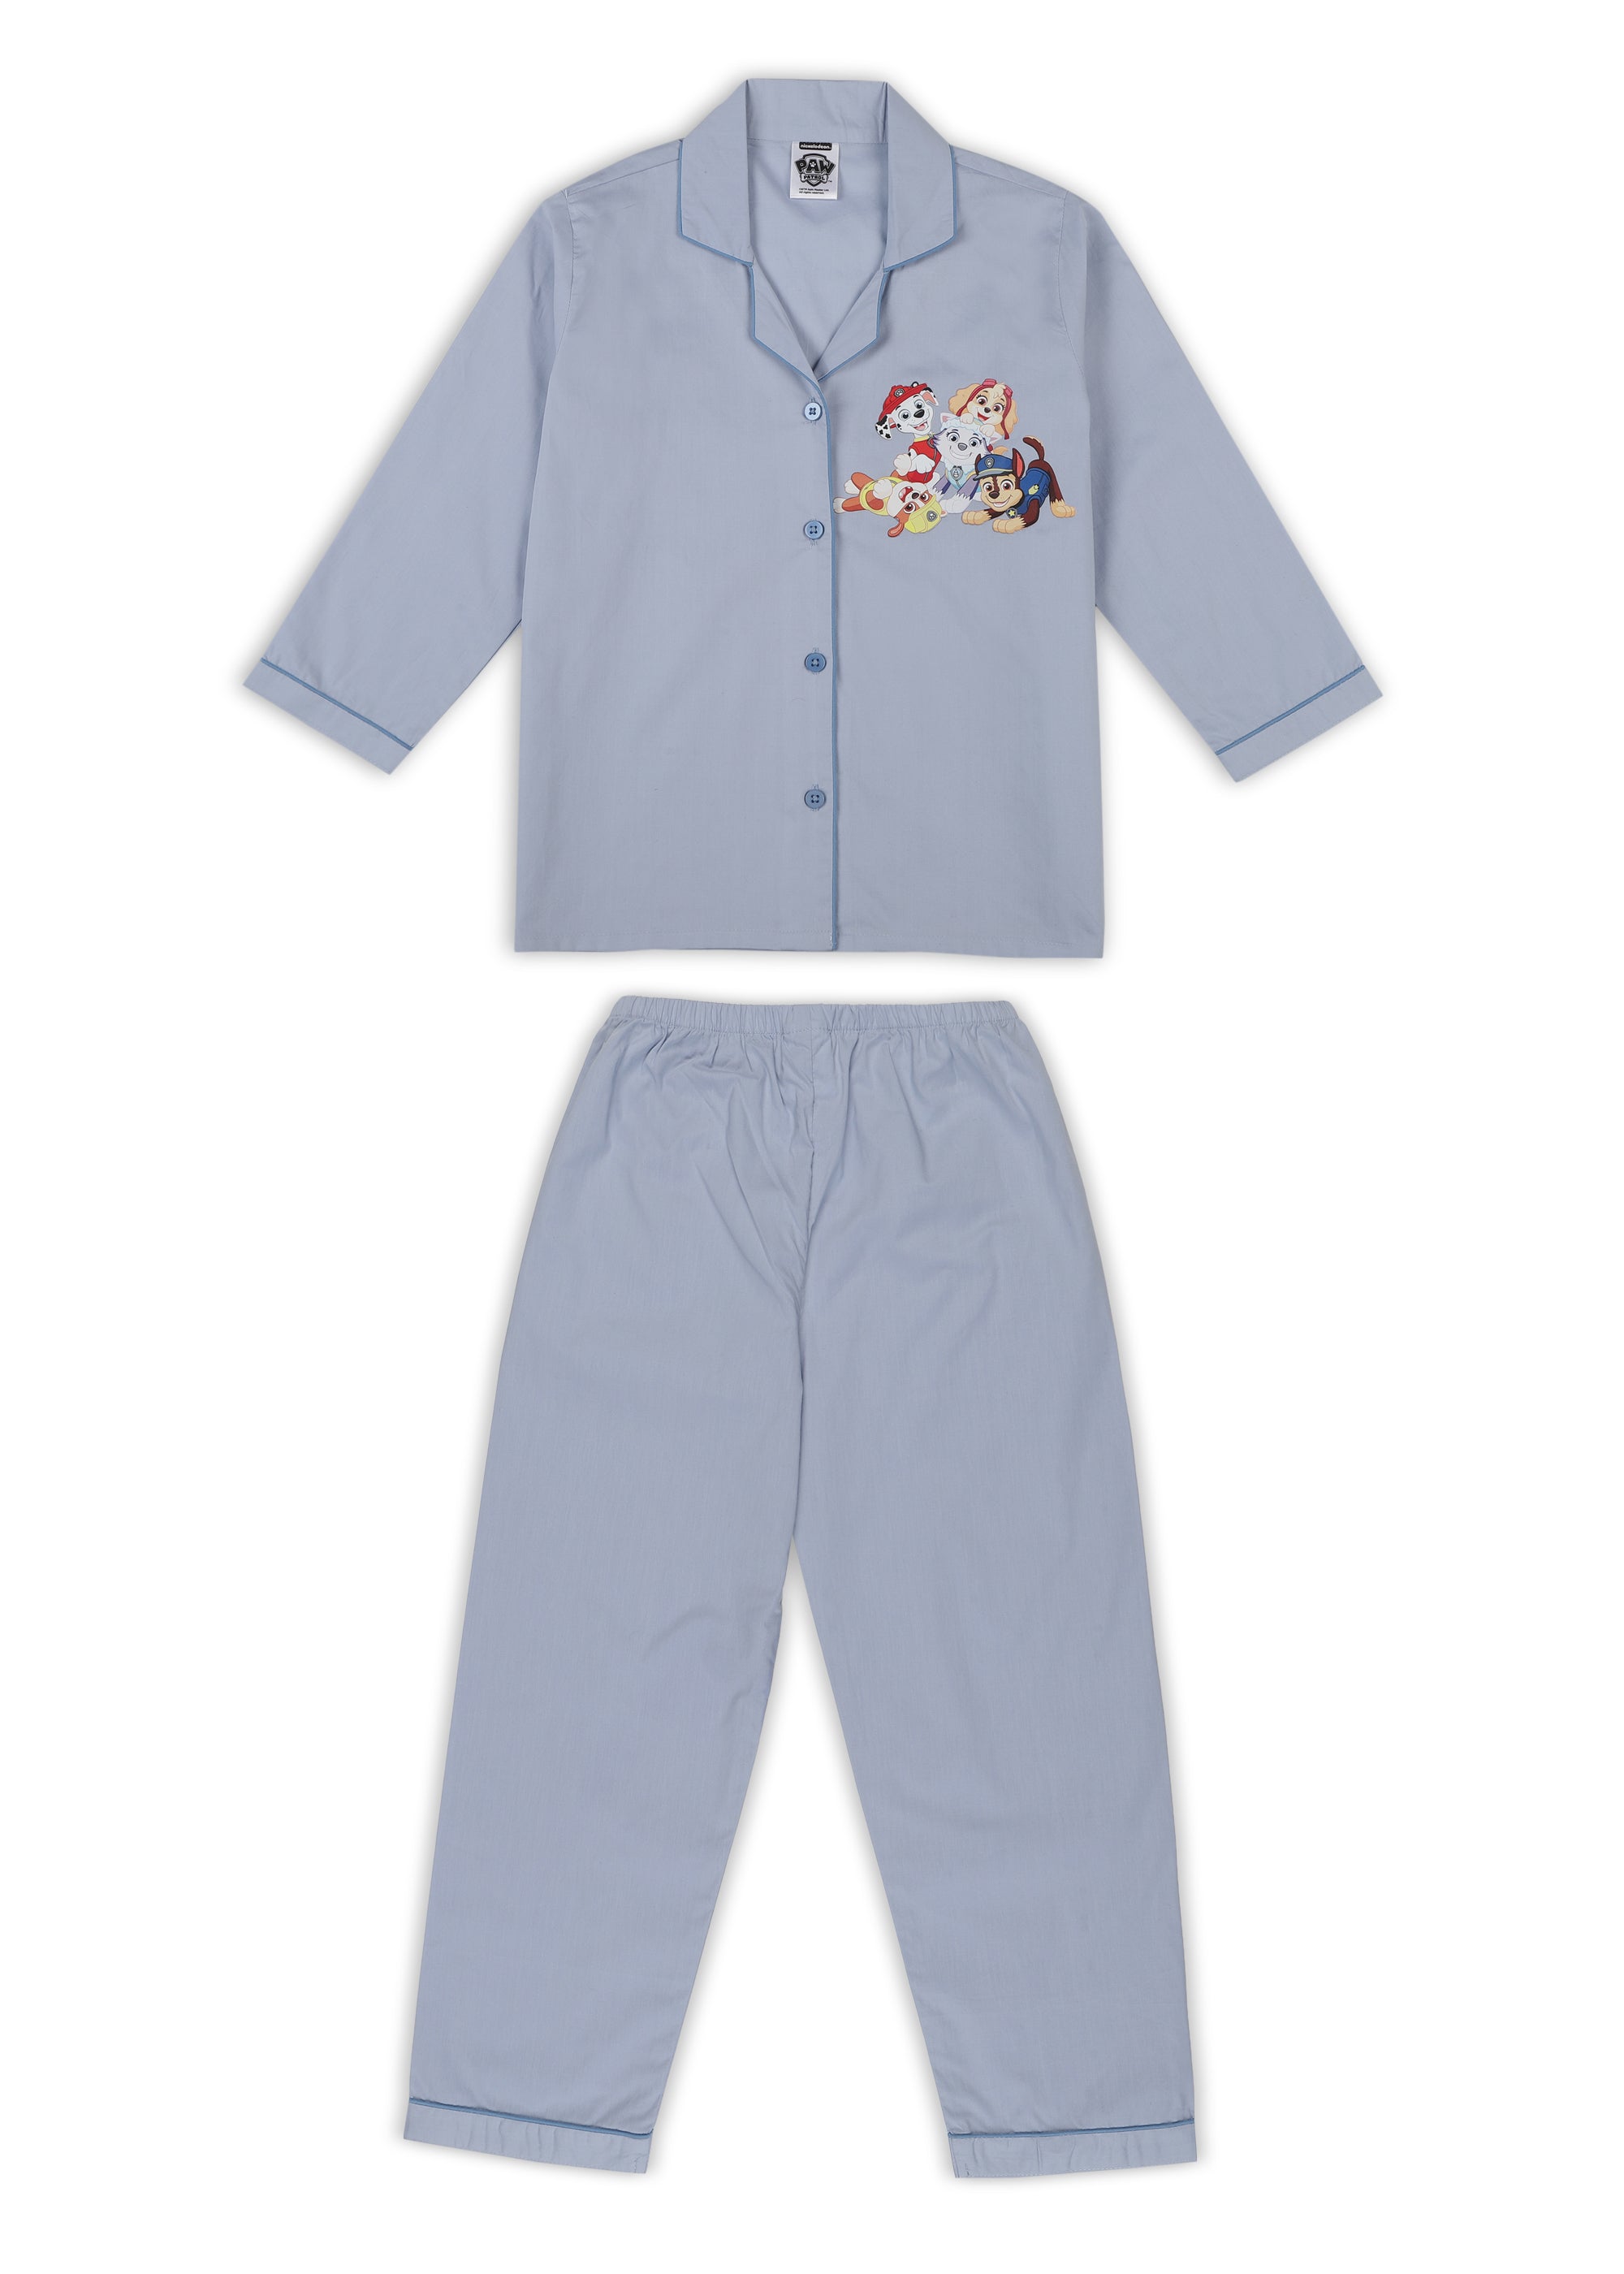 Paw Patrol Pawsome Print Long Sleeve Kids Night Suit